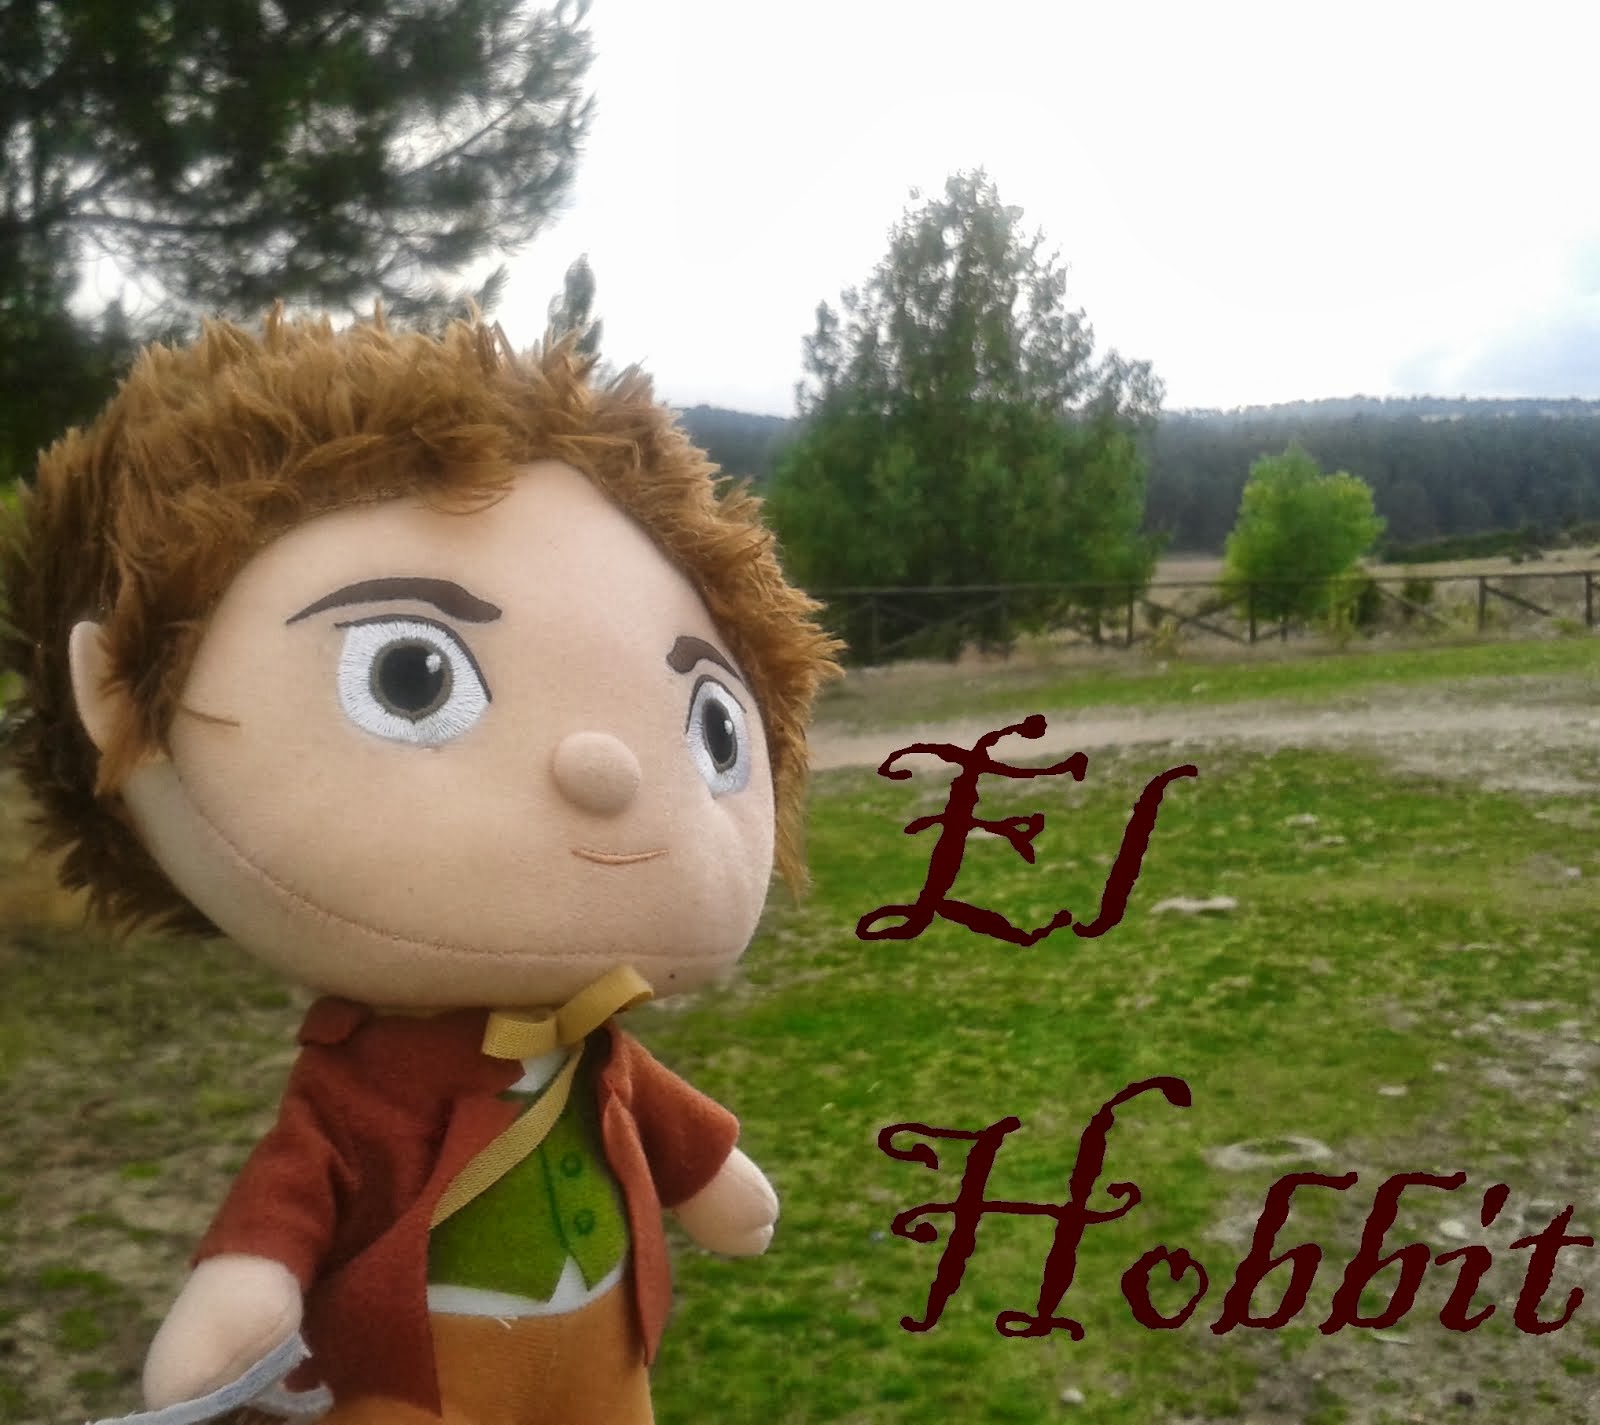 El Hobbit 